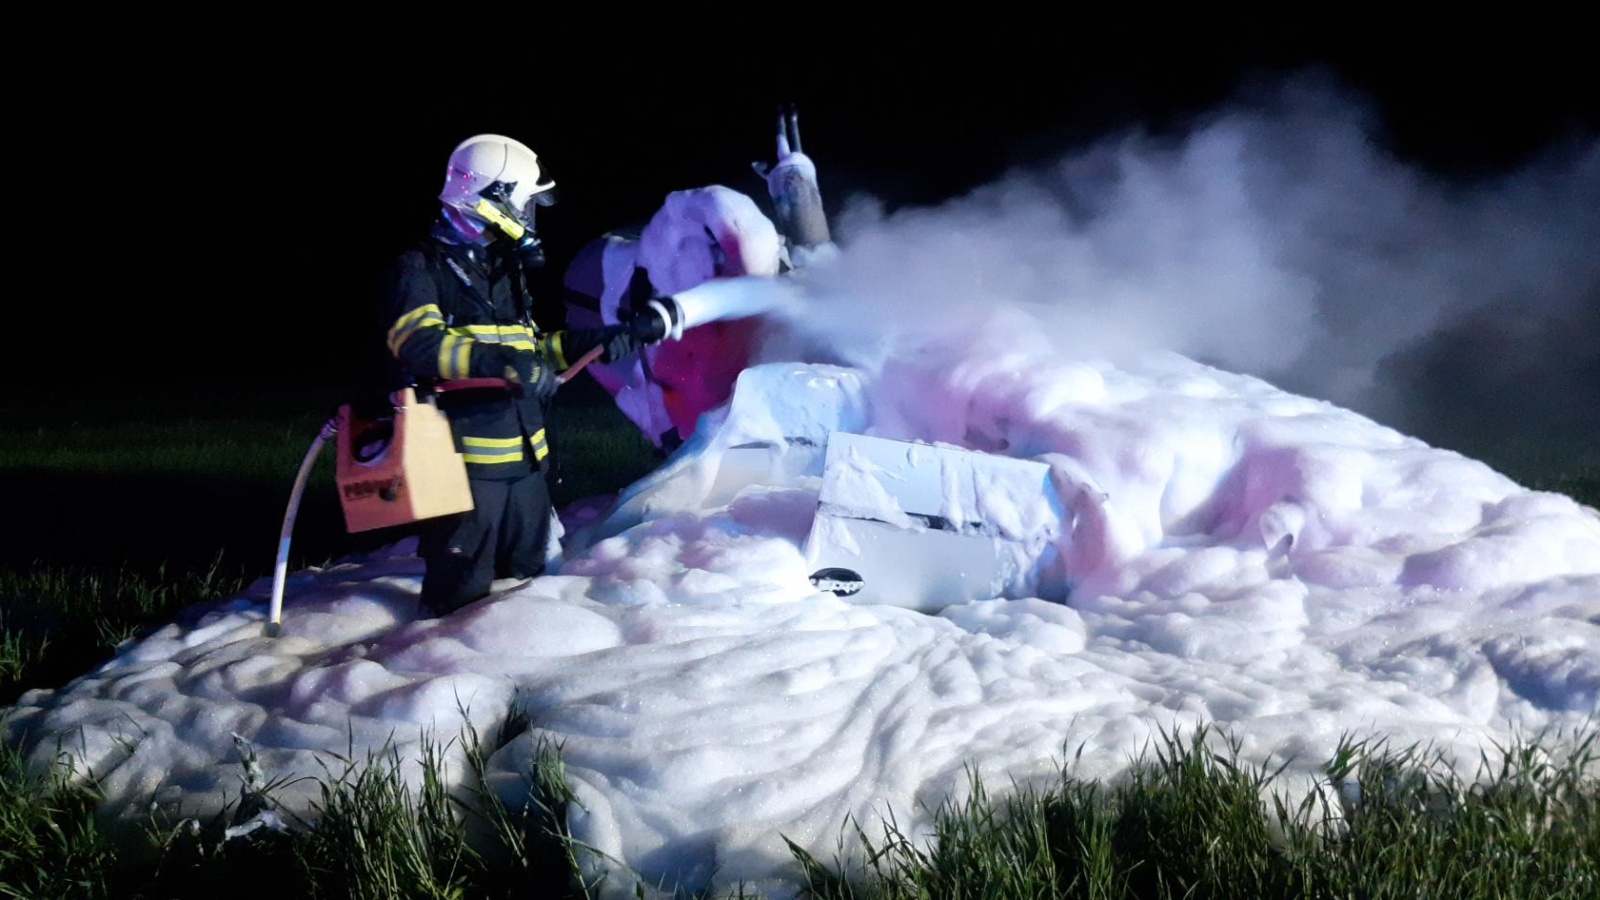 170524-Noční požár osobního automobilu na obchvatu Čáslavi poblíž letiště likvidovaný pomocí pěny.jpg